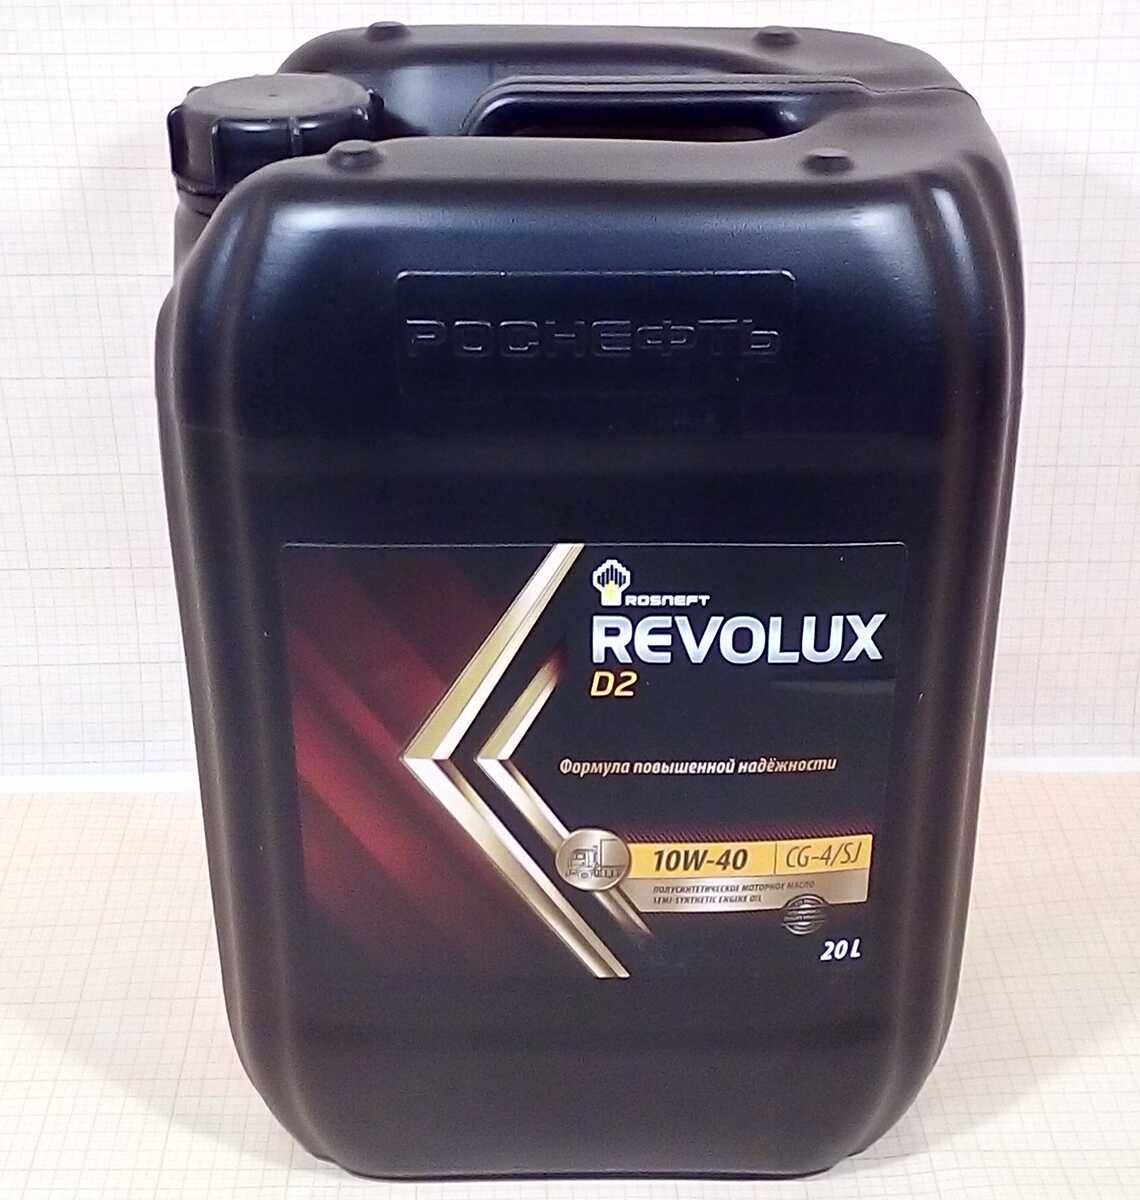 Масло полусинтетика 20 литров. Роснефть d2 10w-40 Revolux масло моторное. Моторное масло Роснефть Revolux d3 10w-40 20 л. Масло моторное Rosneft Revolux d3 10w-40. Роснефть 10w 40 полусинтетика 20л.